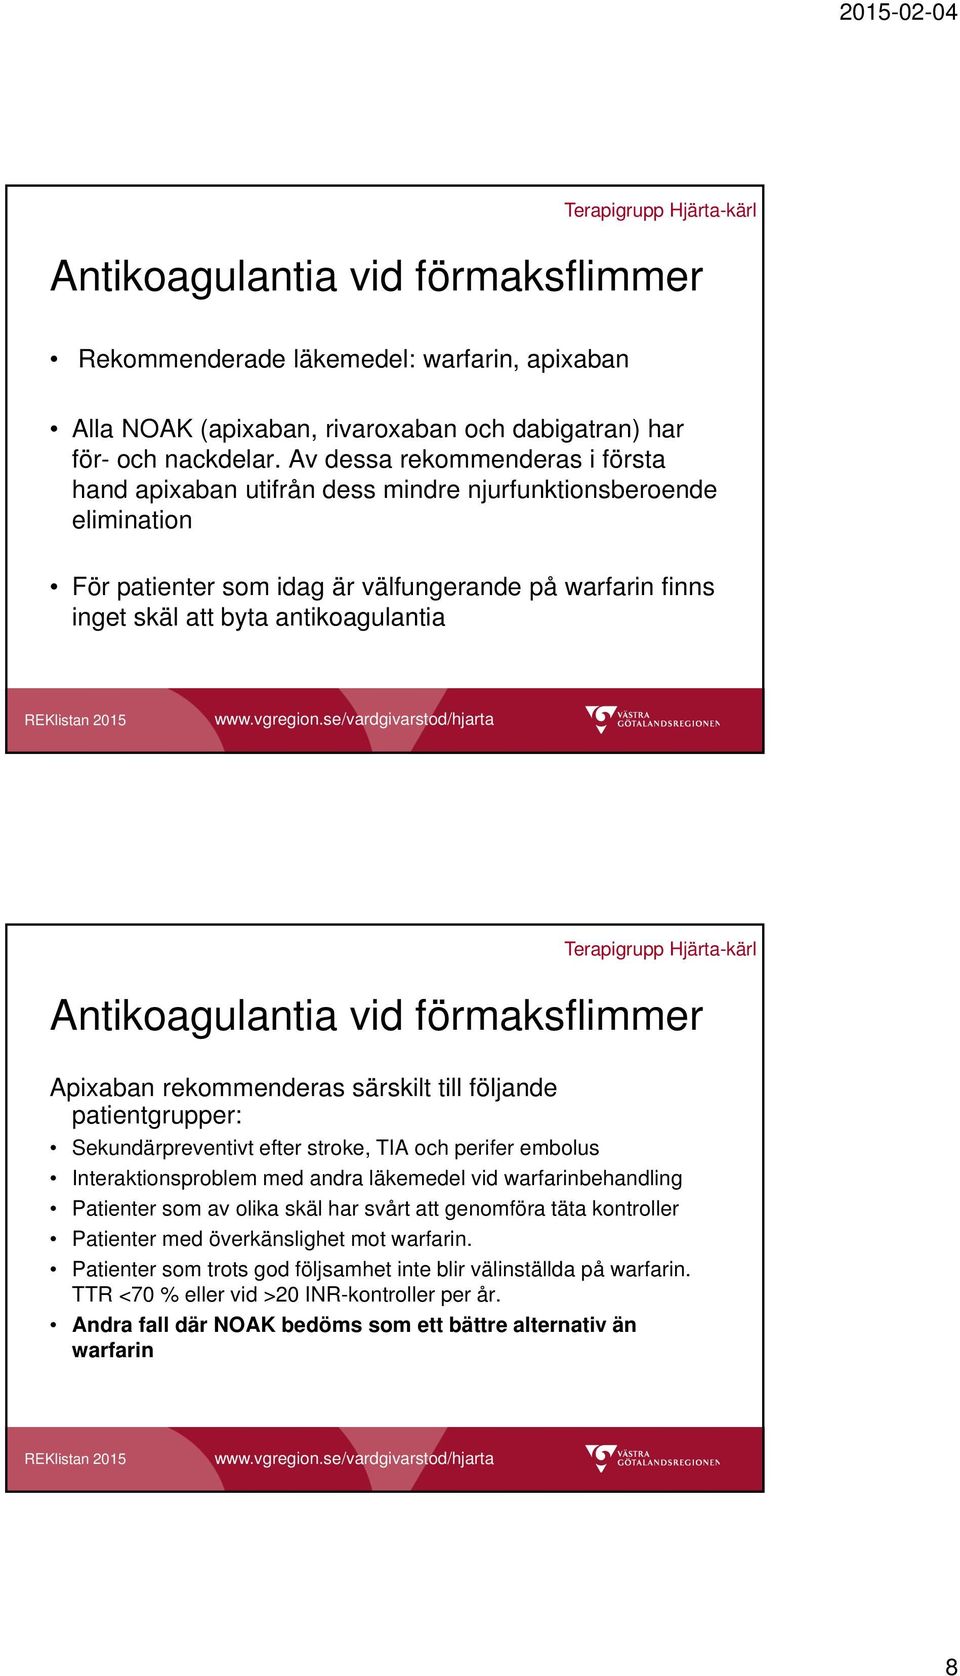 Antikoagulantia vid förmaksflimmer Apixaban rekommenderas särskilt till följande patientgrupper: Sekundärpreventivt efter stroke, TIA och perifer embolus Interaktionsproblem med andra läkemedel vid